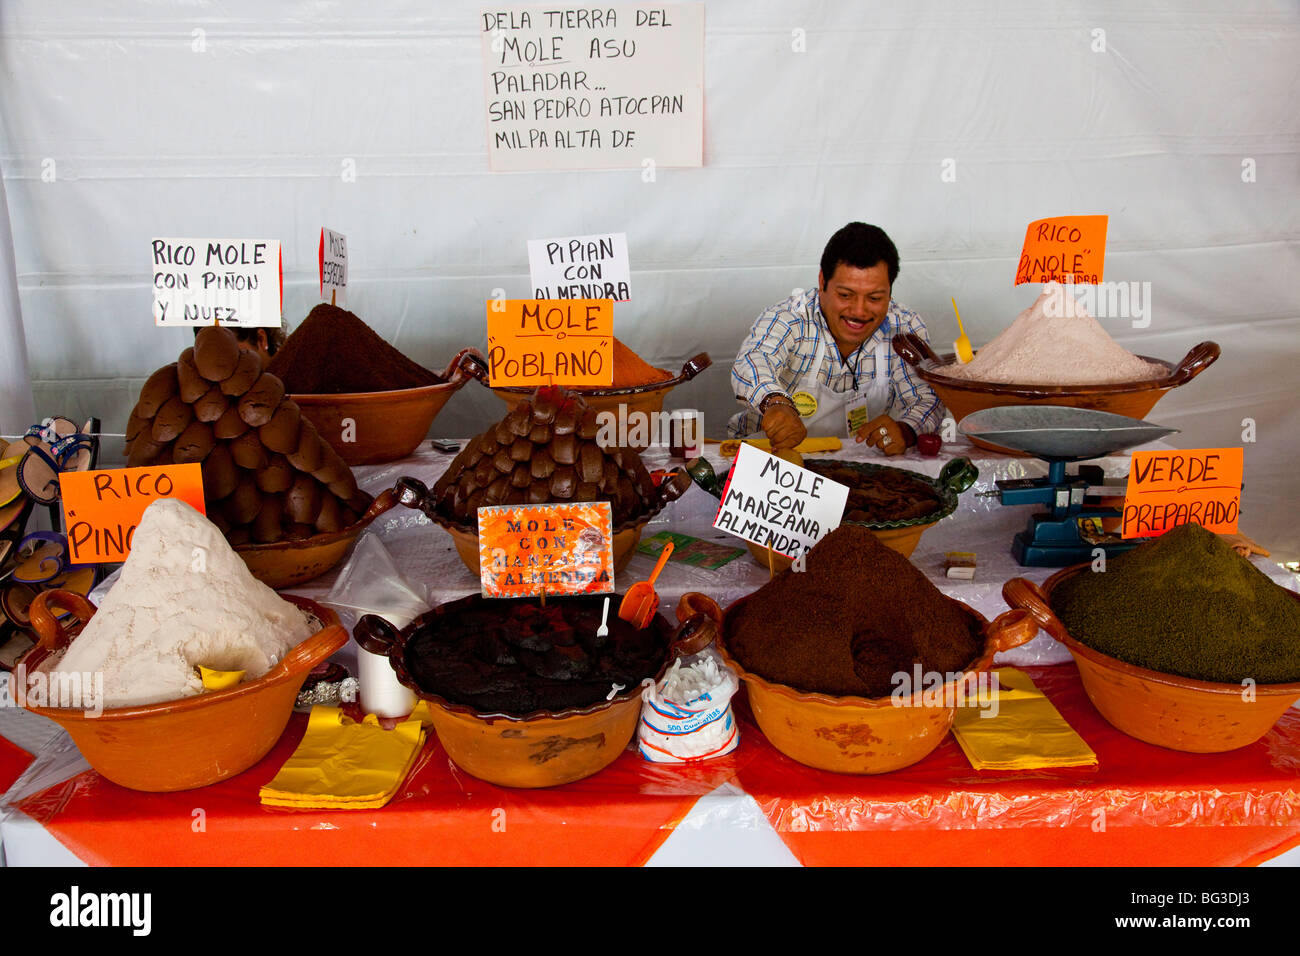 Vendor selling mole in Mexico City Stock Photo